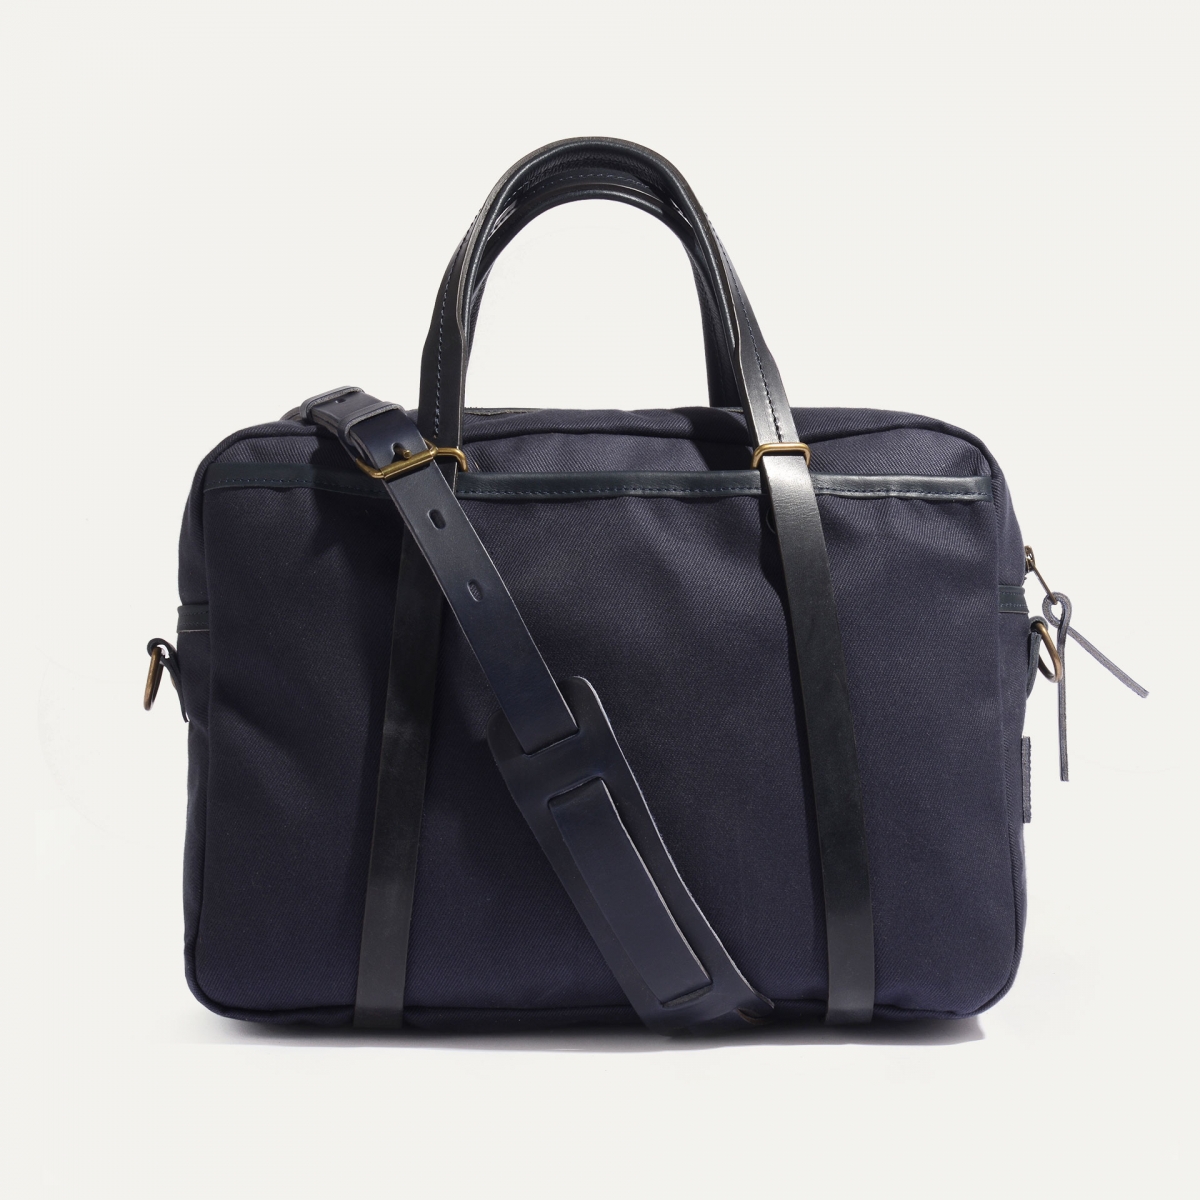 SUMO laptop bag - Bleu de Chauffe x Élysée / Navy Blue